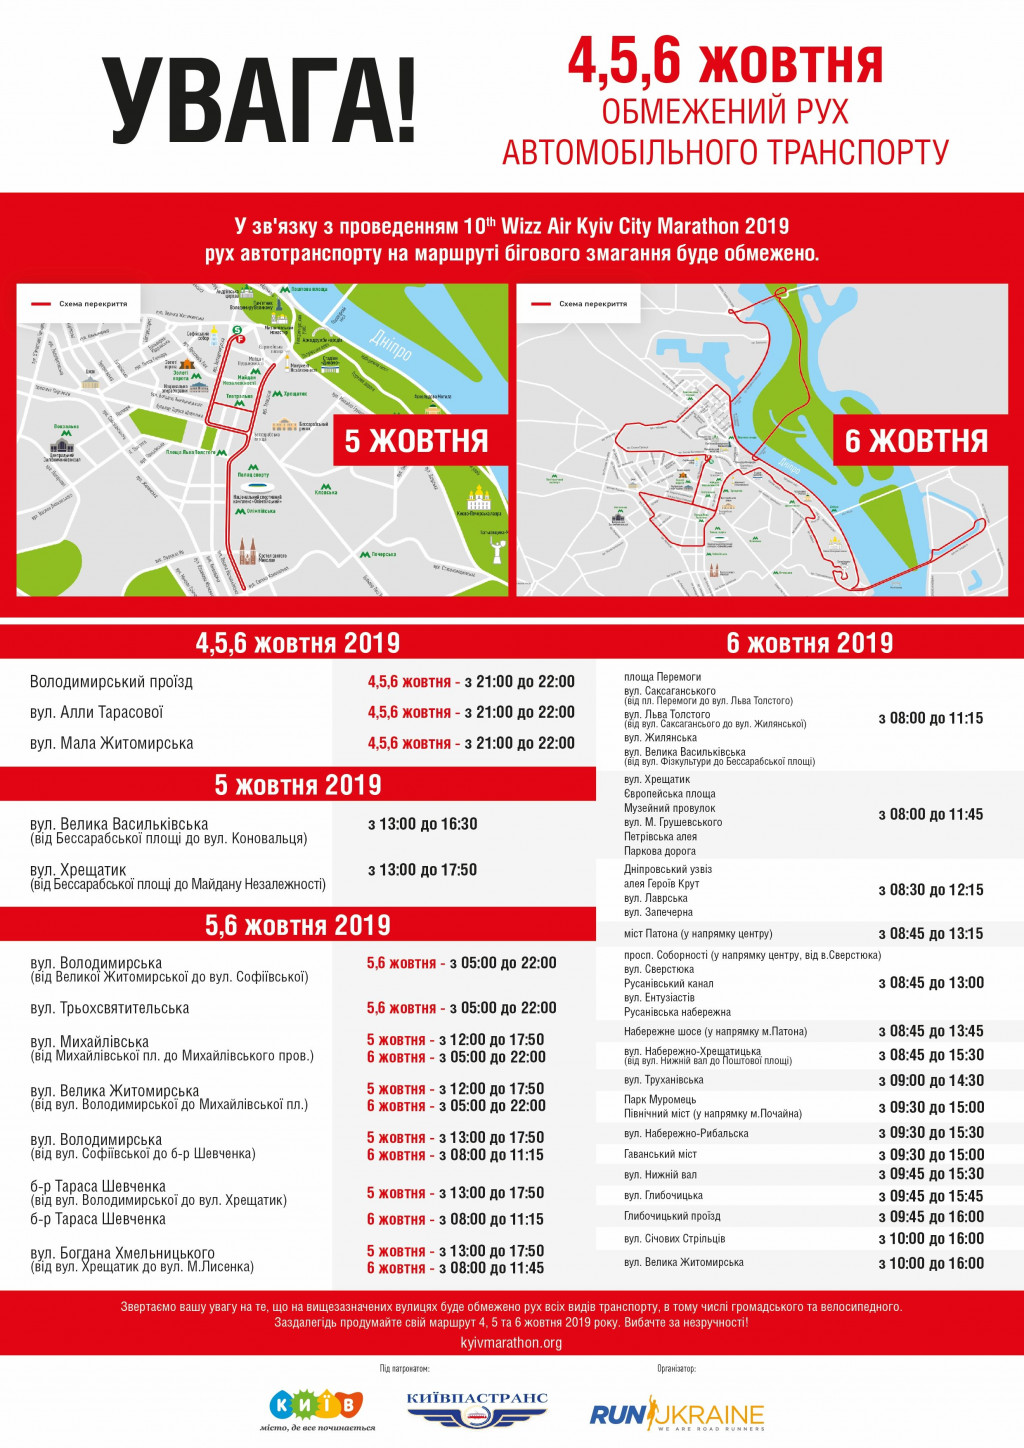 До конца недели, 4-6 октября, из-за марафона в центре Киева будут перекрывать около 40 улиц и 3 моста (схемы)